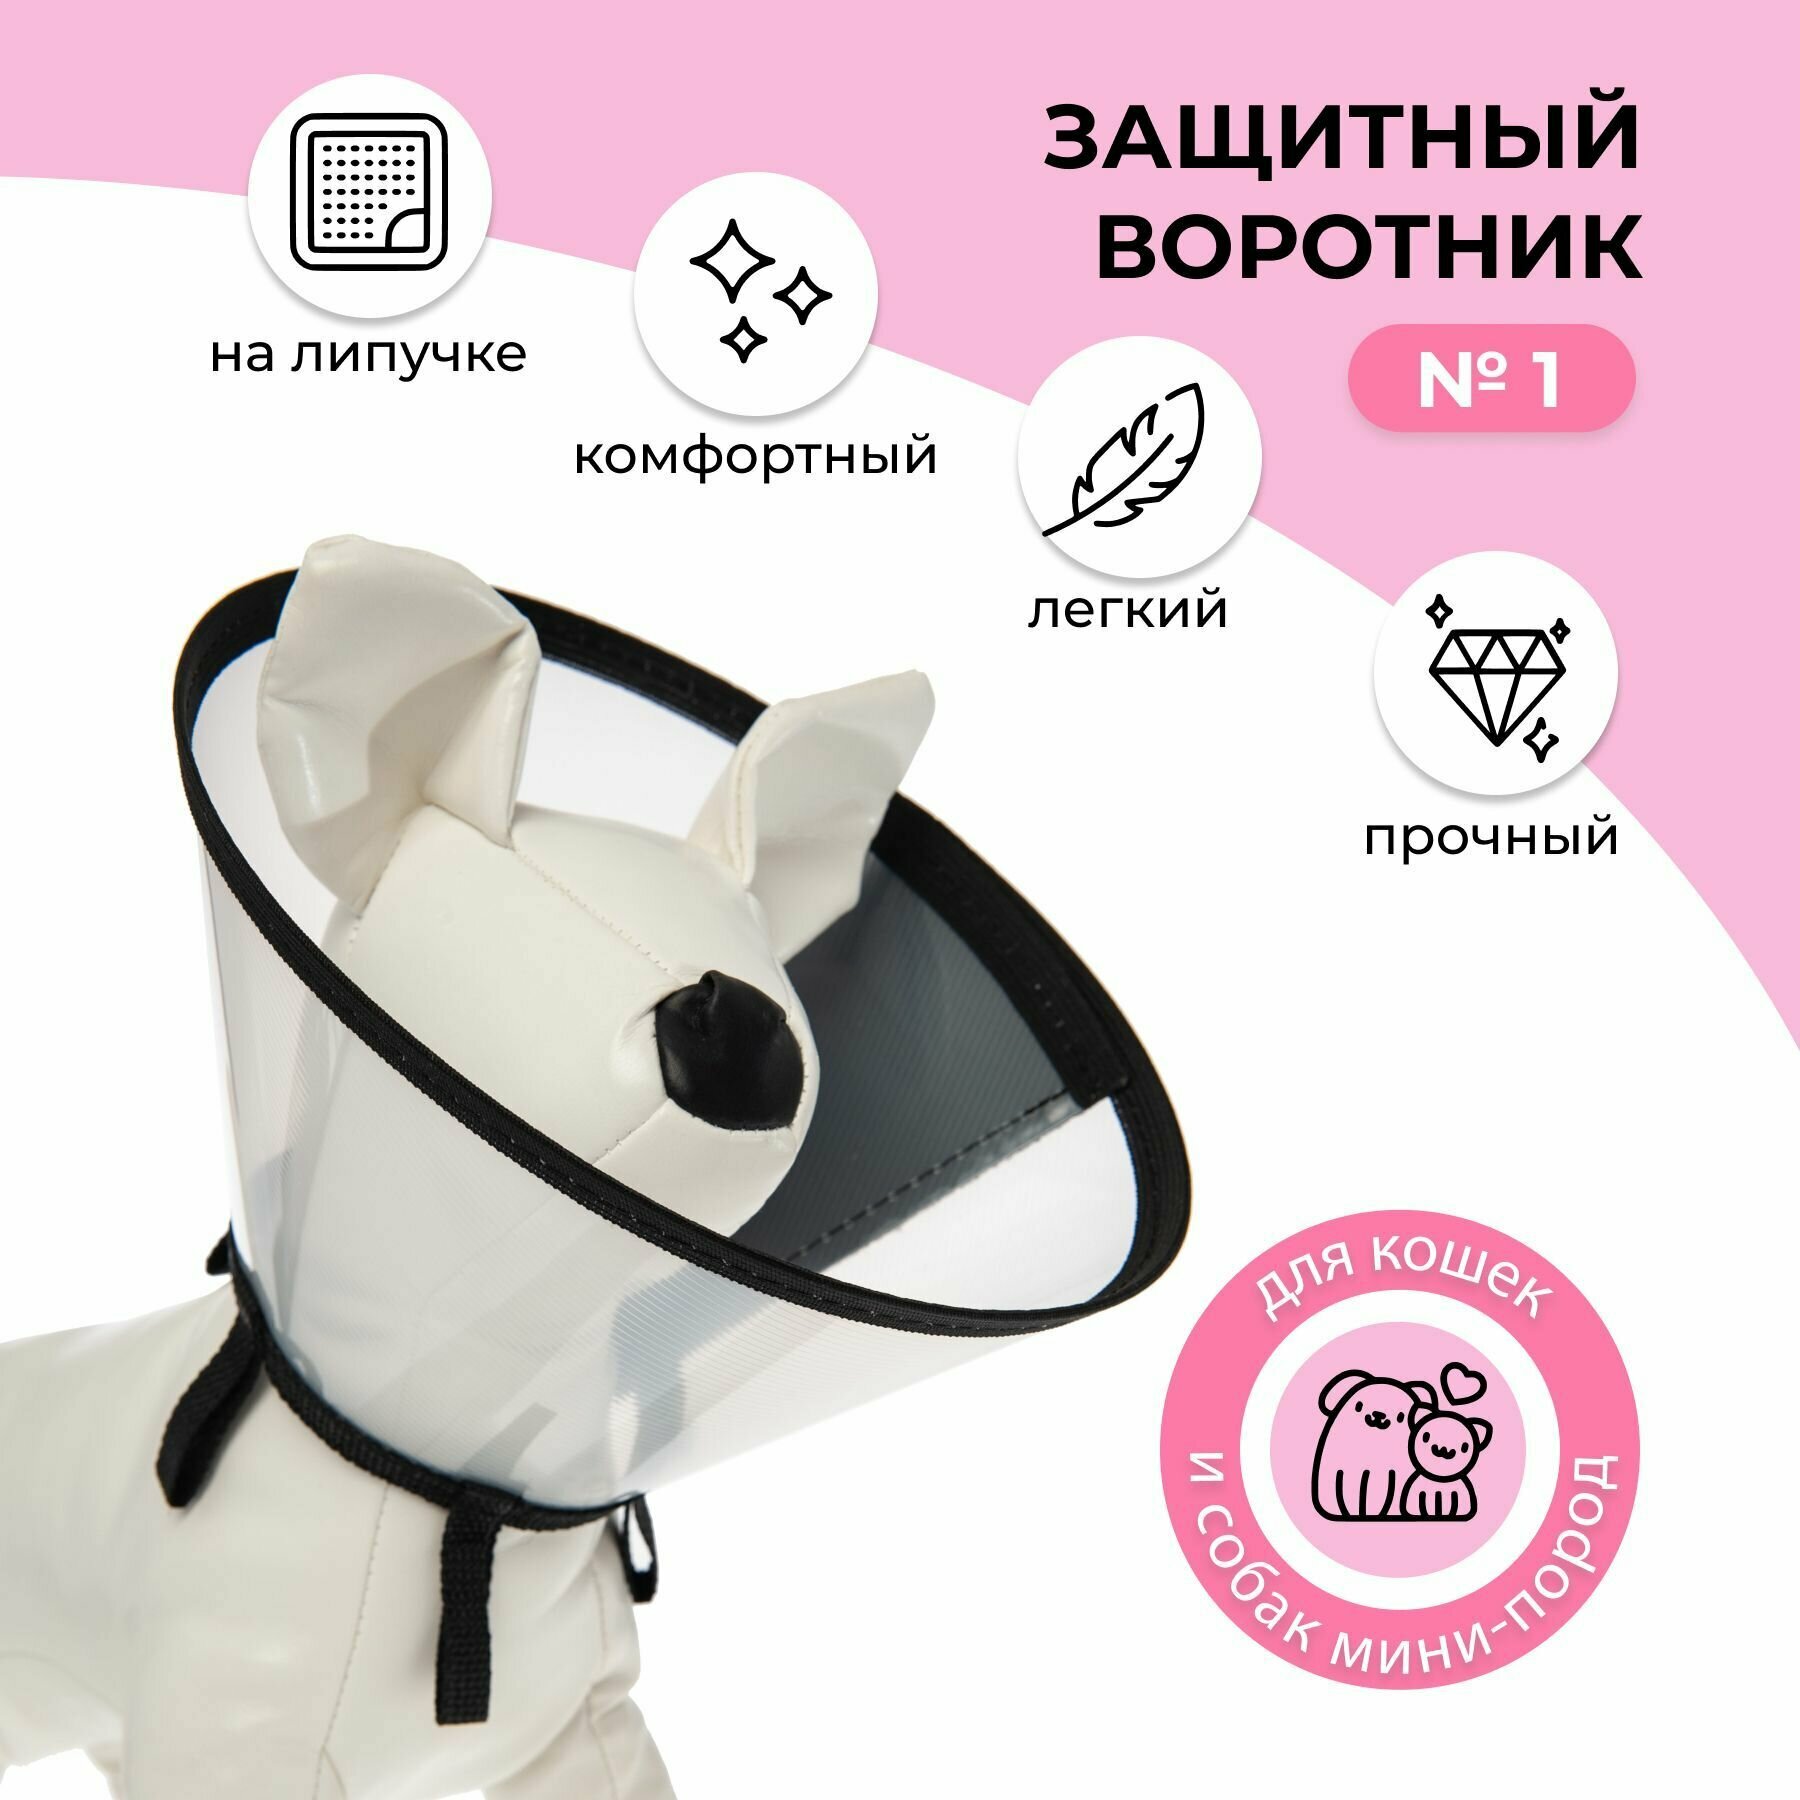 Воротник защитный ветеринарный пластиковый на липучке для животных кошек и собак №2 обхват шеи от 22 до 25 см высота 10 см